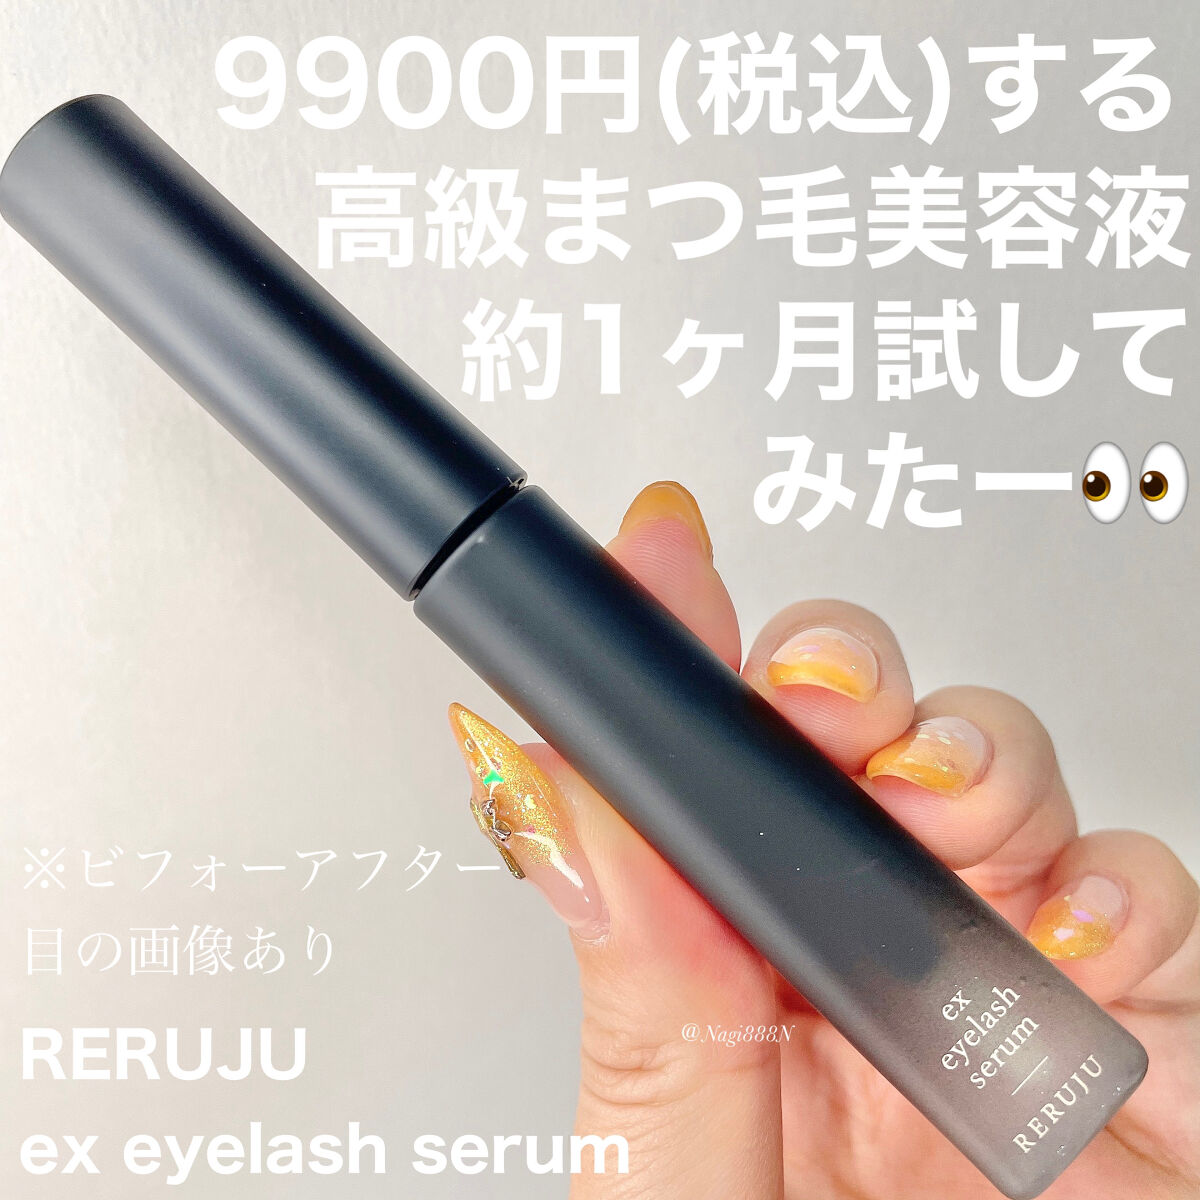 桜の花びら(厚みあり) RERUJU ex eyelash serum